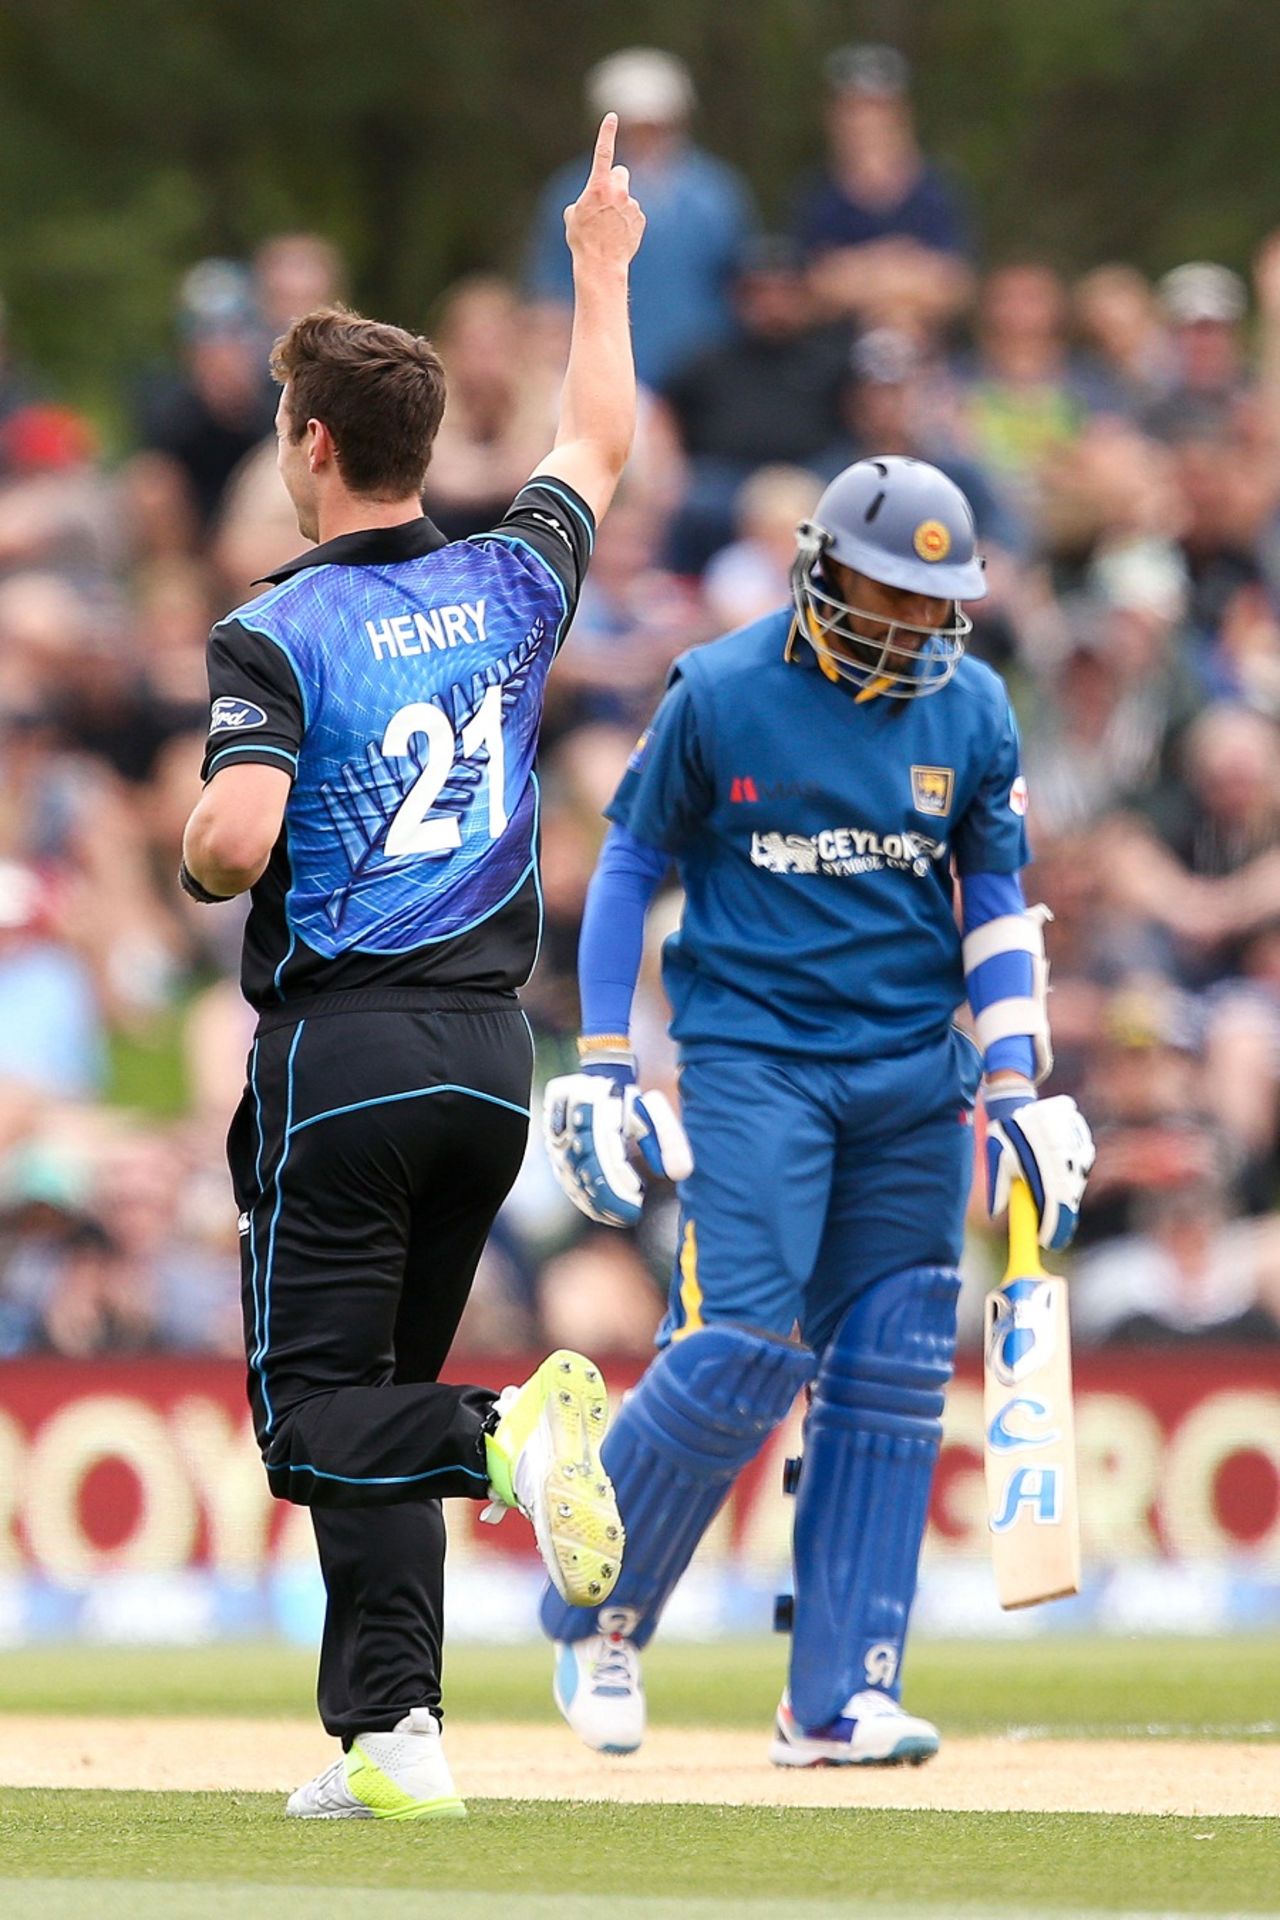 Matt Henry removed Tillakaratne Dilshan for seven, New Zealand v Sri Lanka, 2nd ODI, Christchurch, December 28, 2015